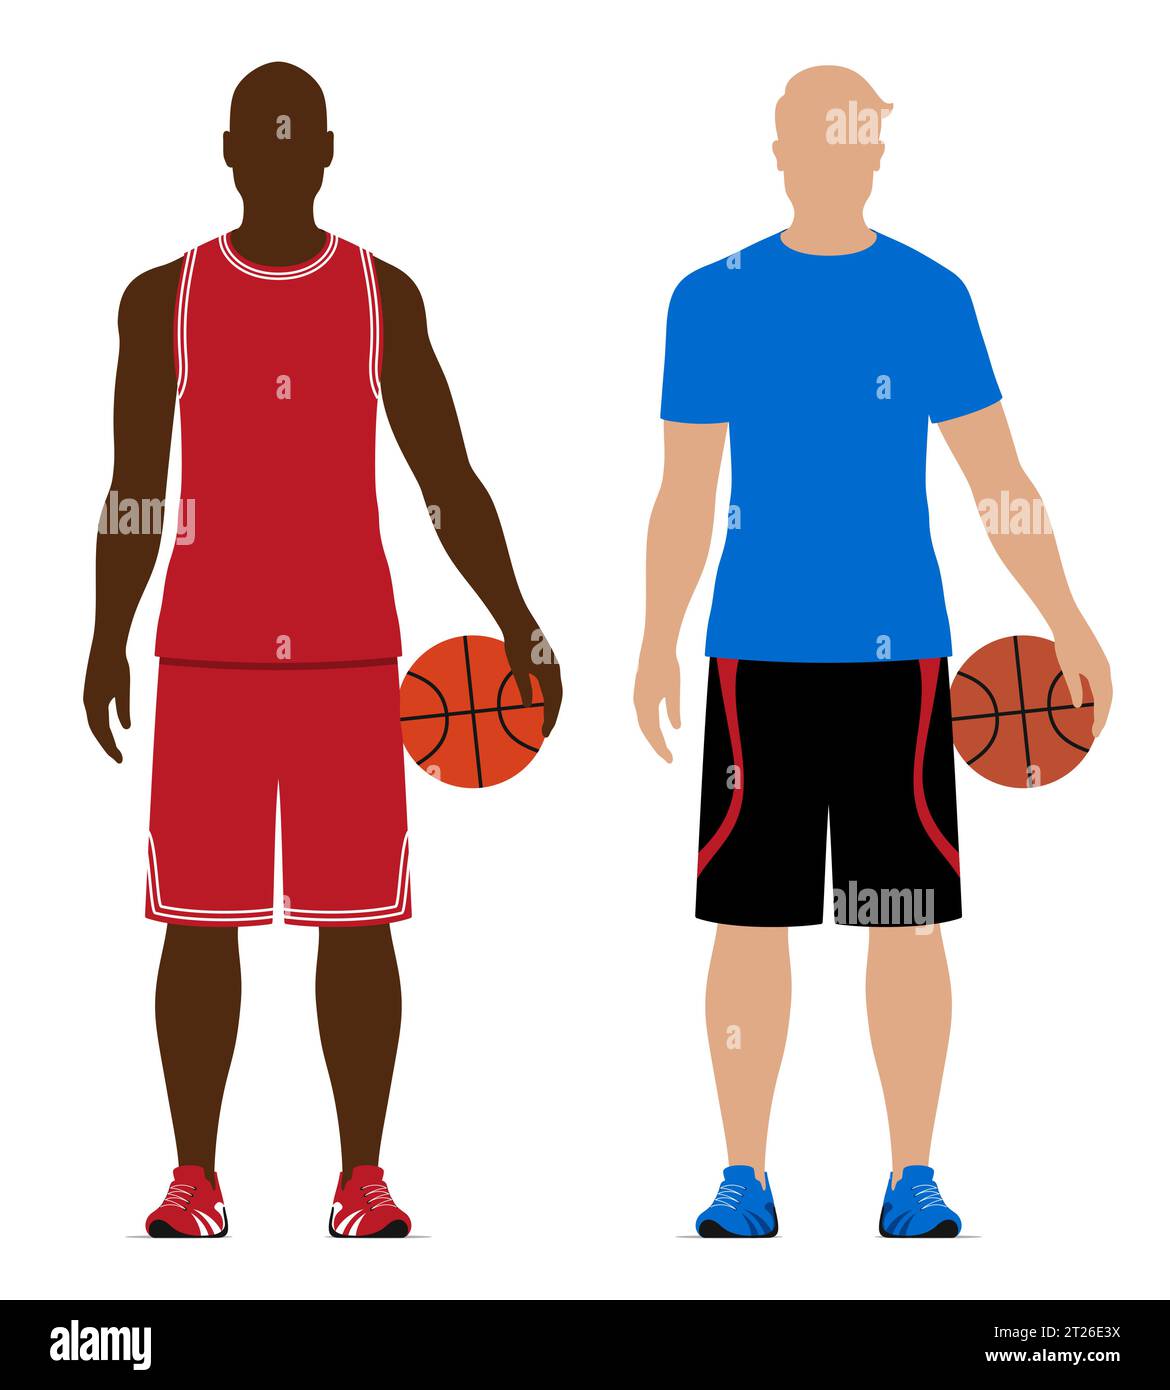 Joueurs de basket-ball noir et blanc tenant des balles, portant des vêtements de sport de style professionnel et libre, illustration vectorielle isolée sur fond blanc. Illustration de Vecteur